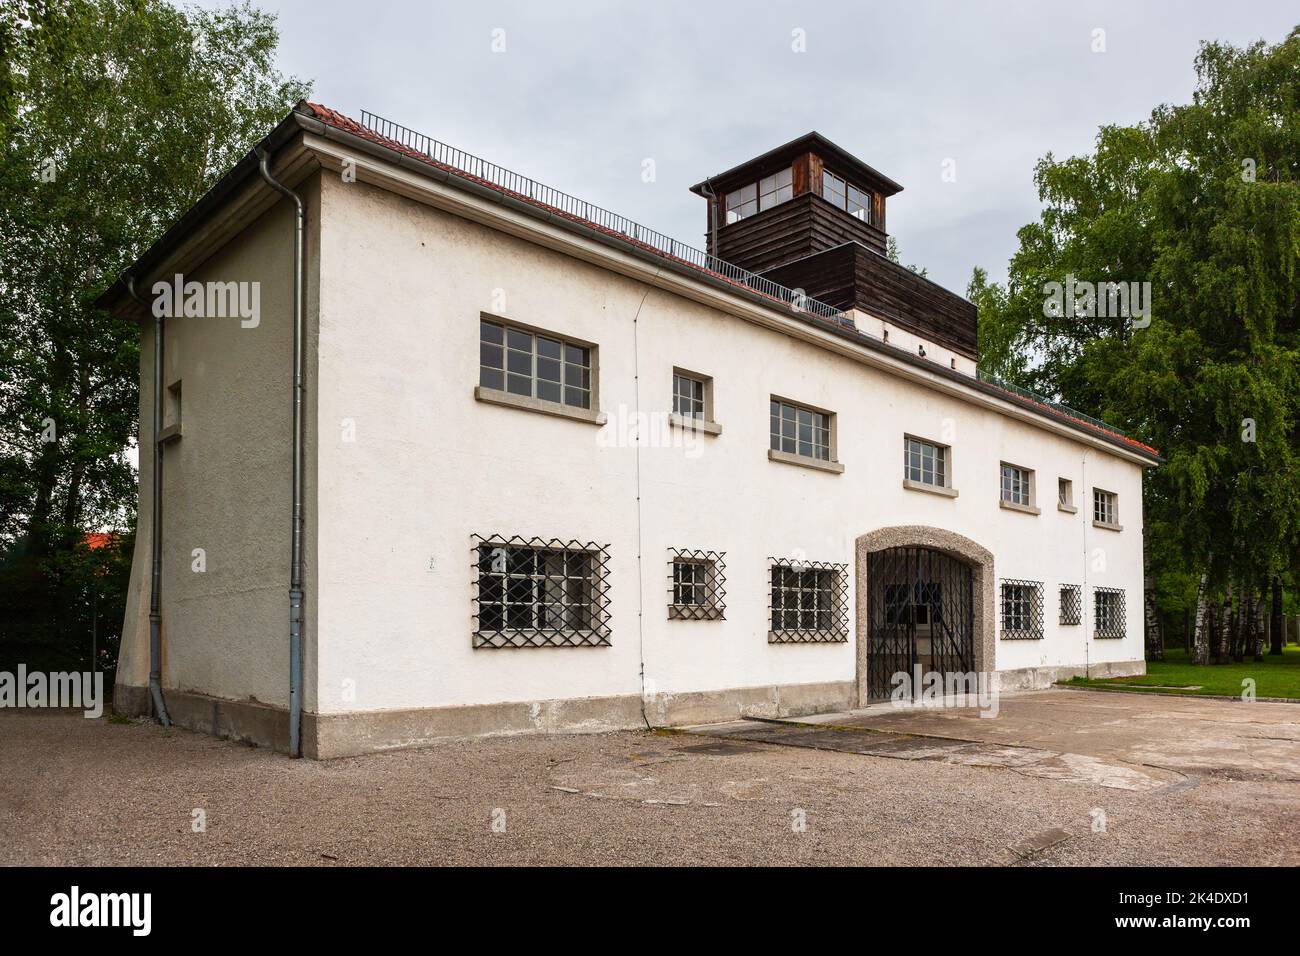 Dachau, Deutschland - 4. Juli 2011 : Gedenkstätte Konzentrationslager Dachau. Nazi-Konzentrationslager von 1933 bis 1945. Jorhaus, innen Eingangstor und Stockfoto